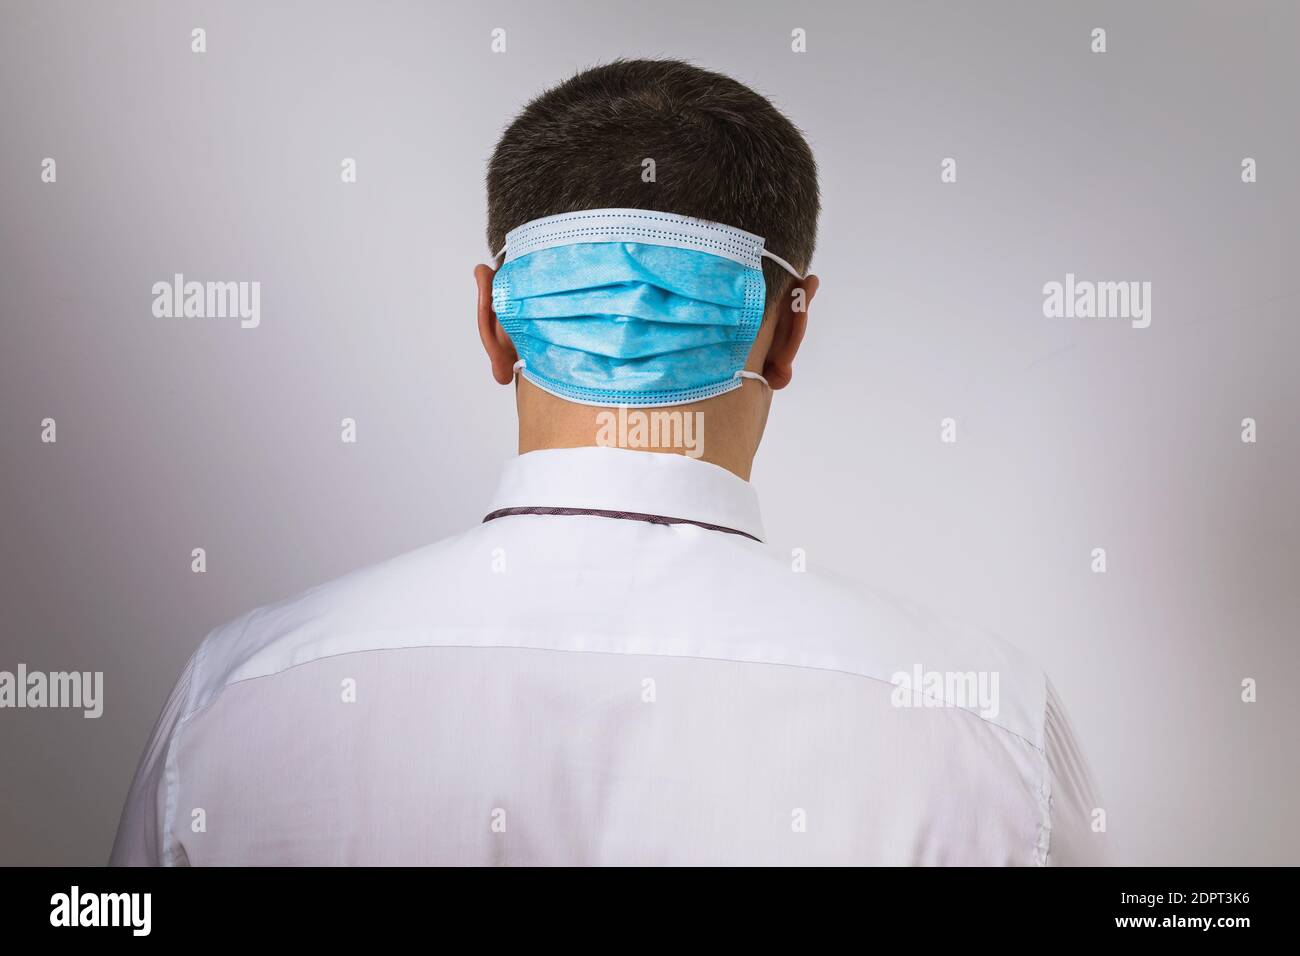 Ein Mann mit einer medizinischen Maske auf dem Hinterkopf. Konzept zum Thema Depression aufgrund der Quarantäne durch das Coronavirus. Stockfoto